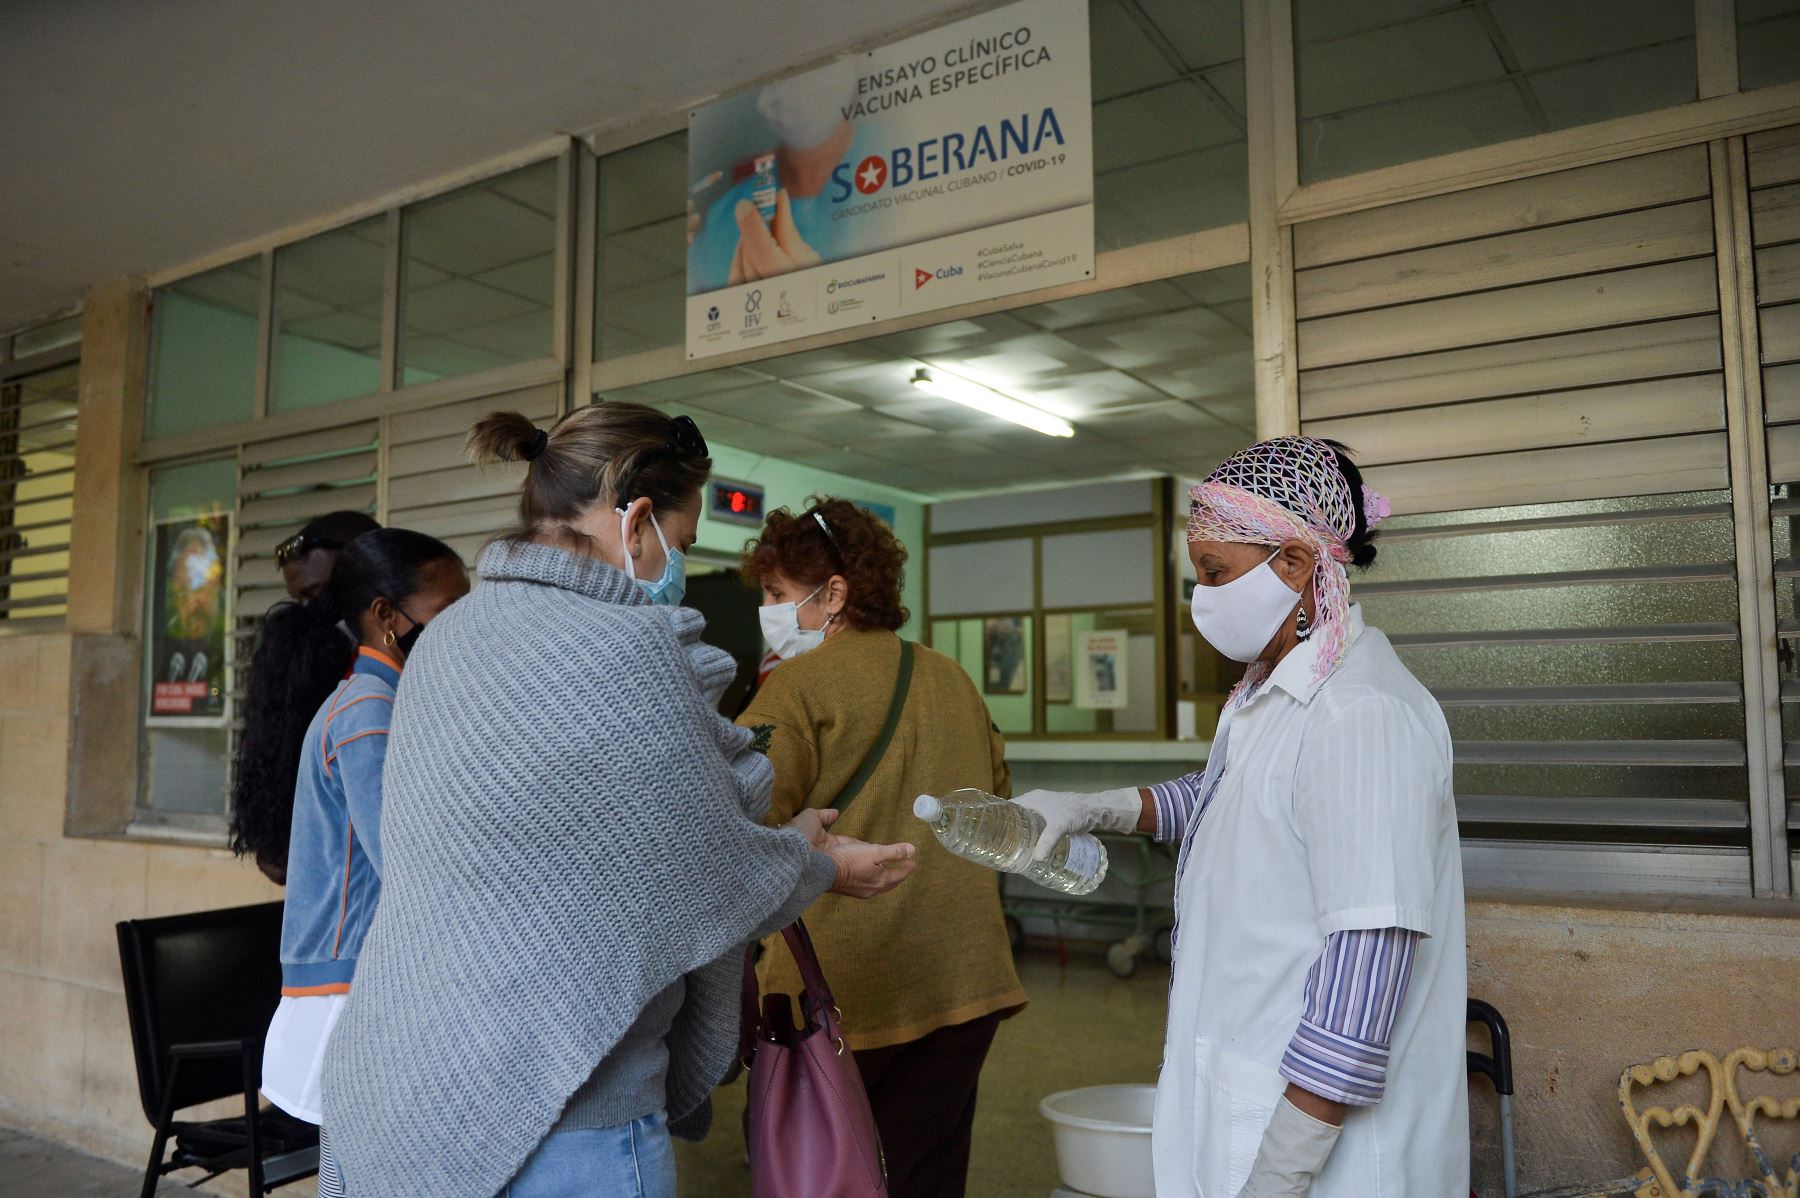 El lunes, Soberana 2 pasó a la fase II b de ensayos clínicos, lo que involucra a 900 voluntarios. Foto: AFP